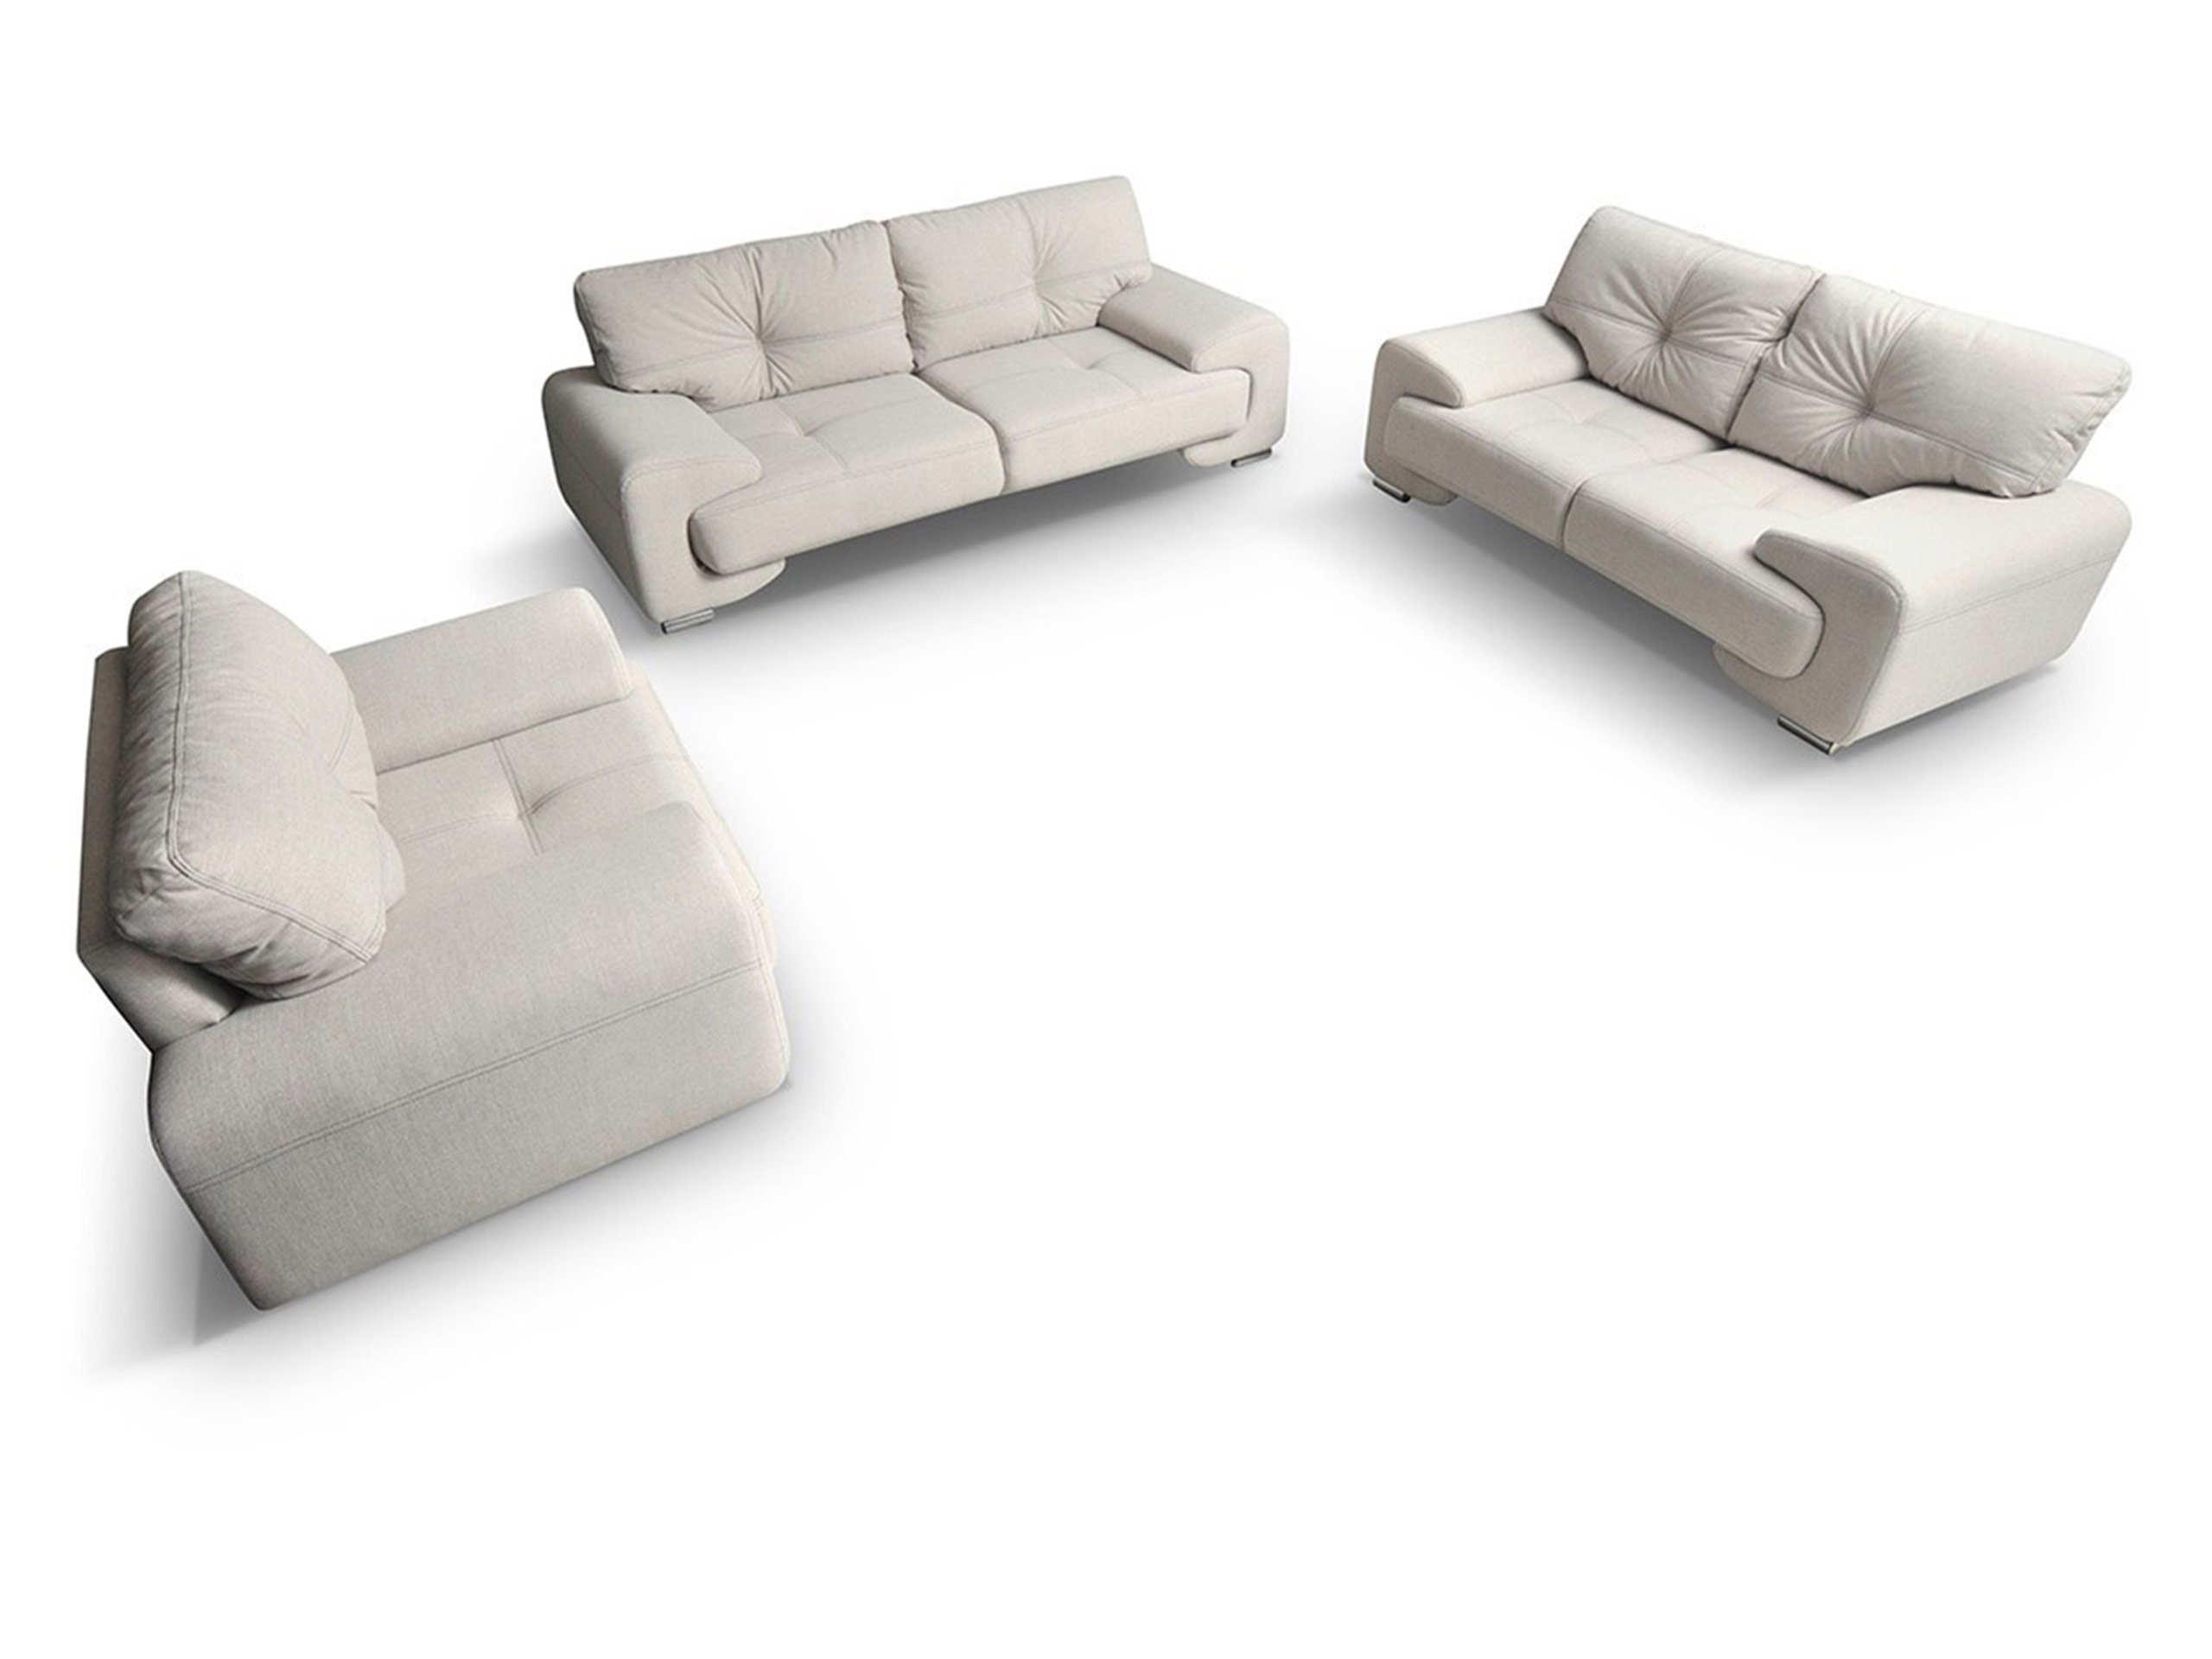 Мебель три дивана. "Бонтон"(2+1) набор мягкой мебели. Набор диван кресла (2+1+1)+1 Endeavour. Комплект диван Вилсон комплект серый.